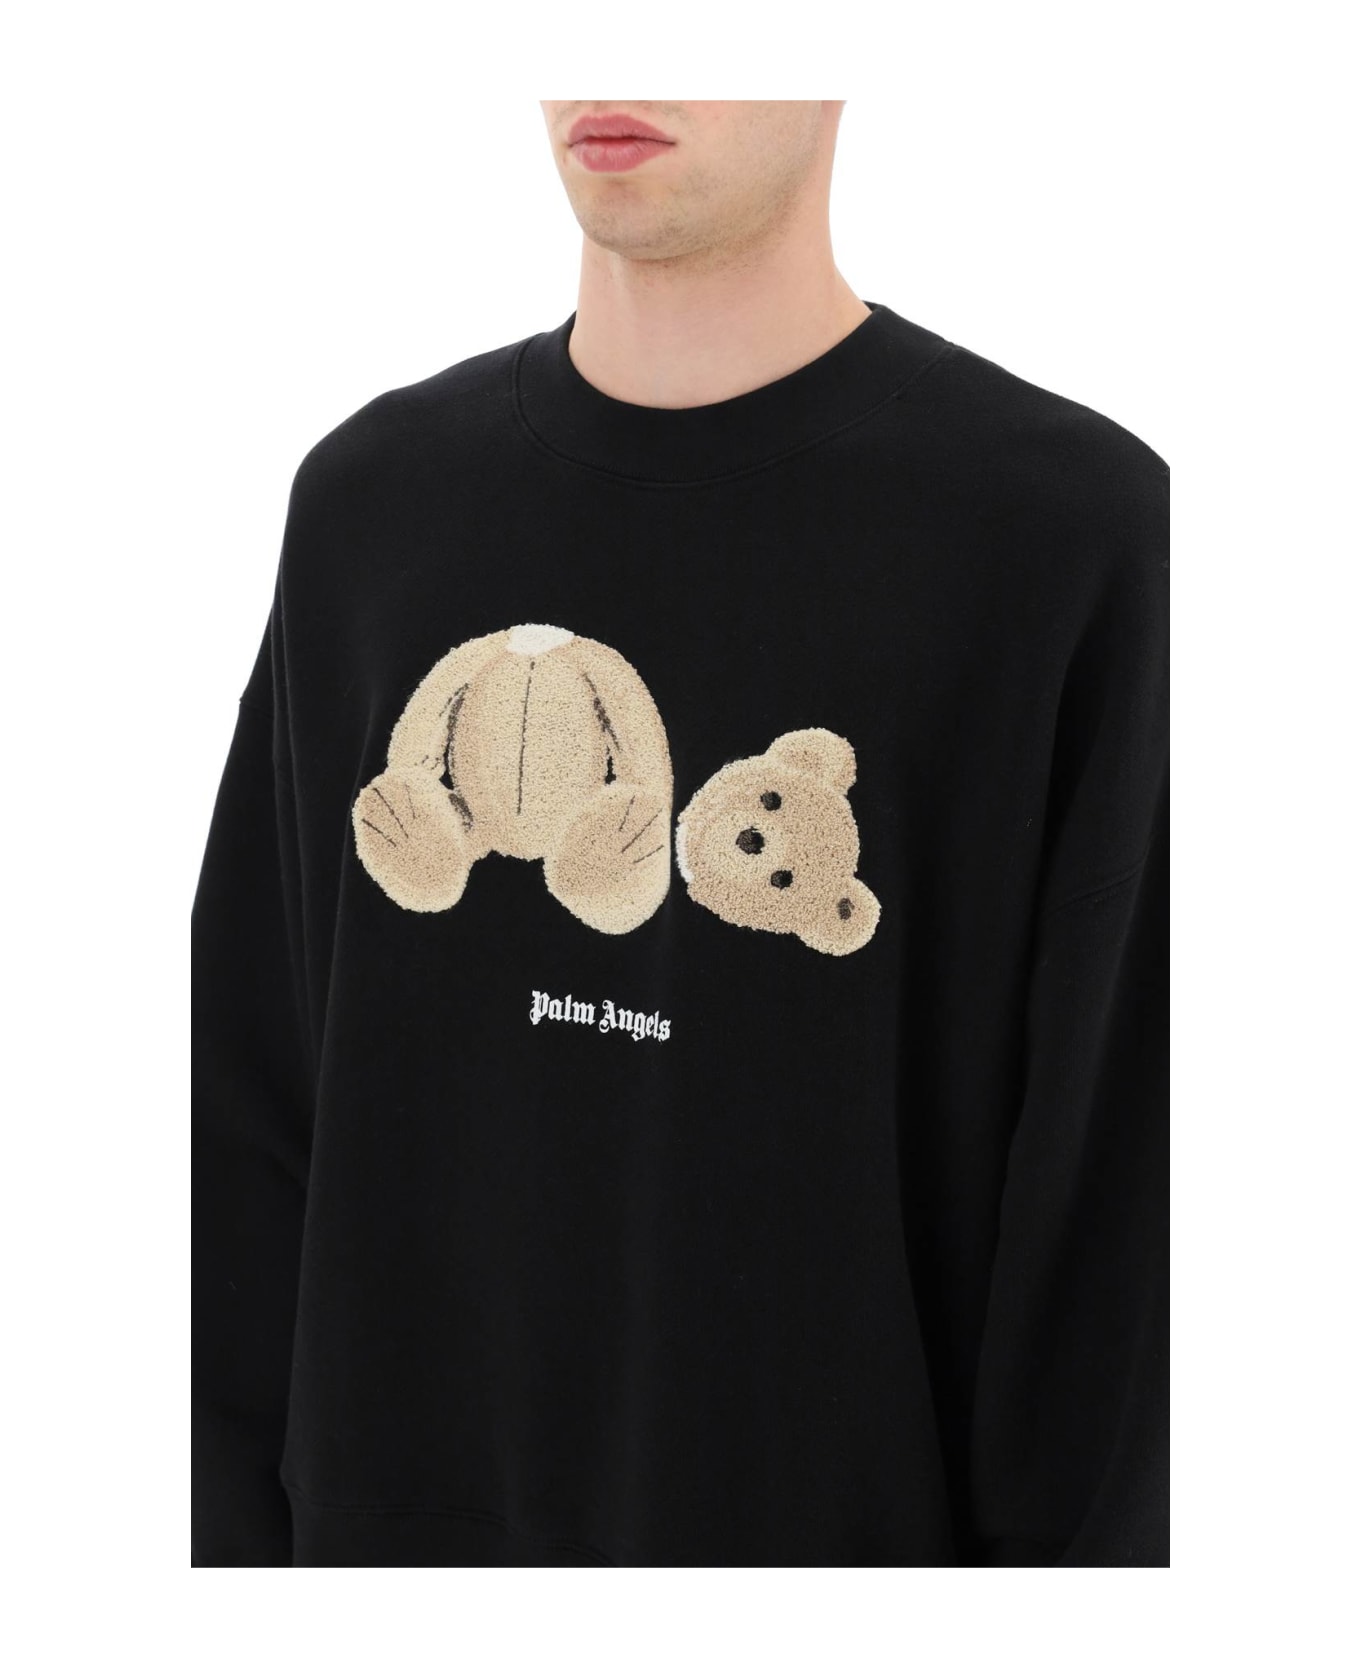 Palm Angels Teddy Bear Sweatshirt - Black